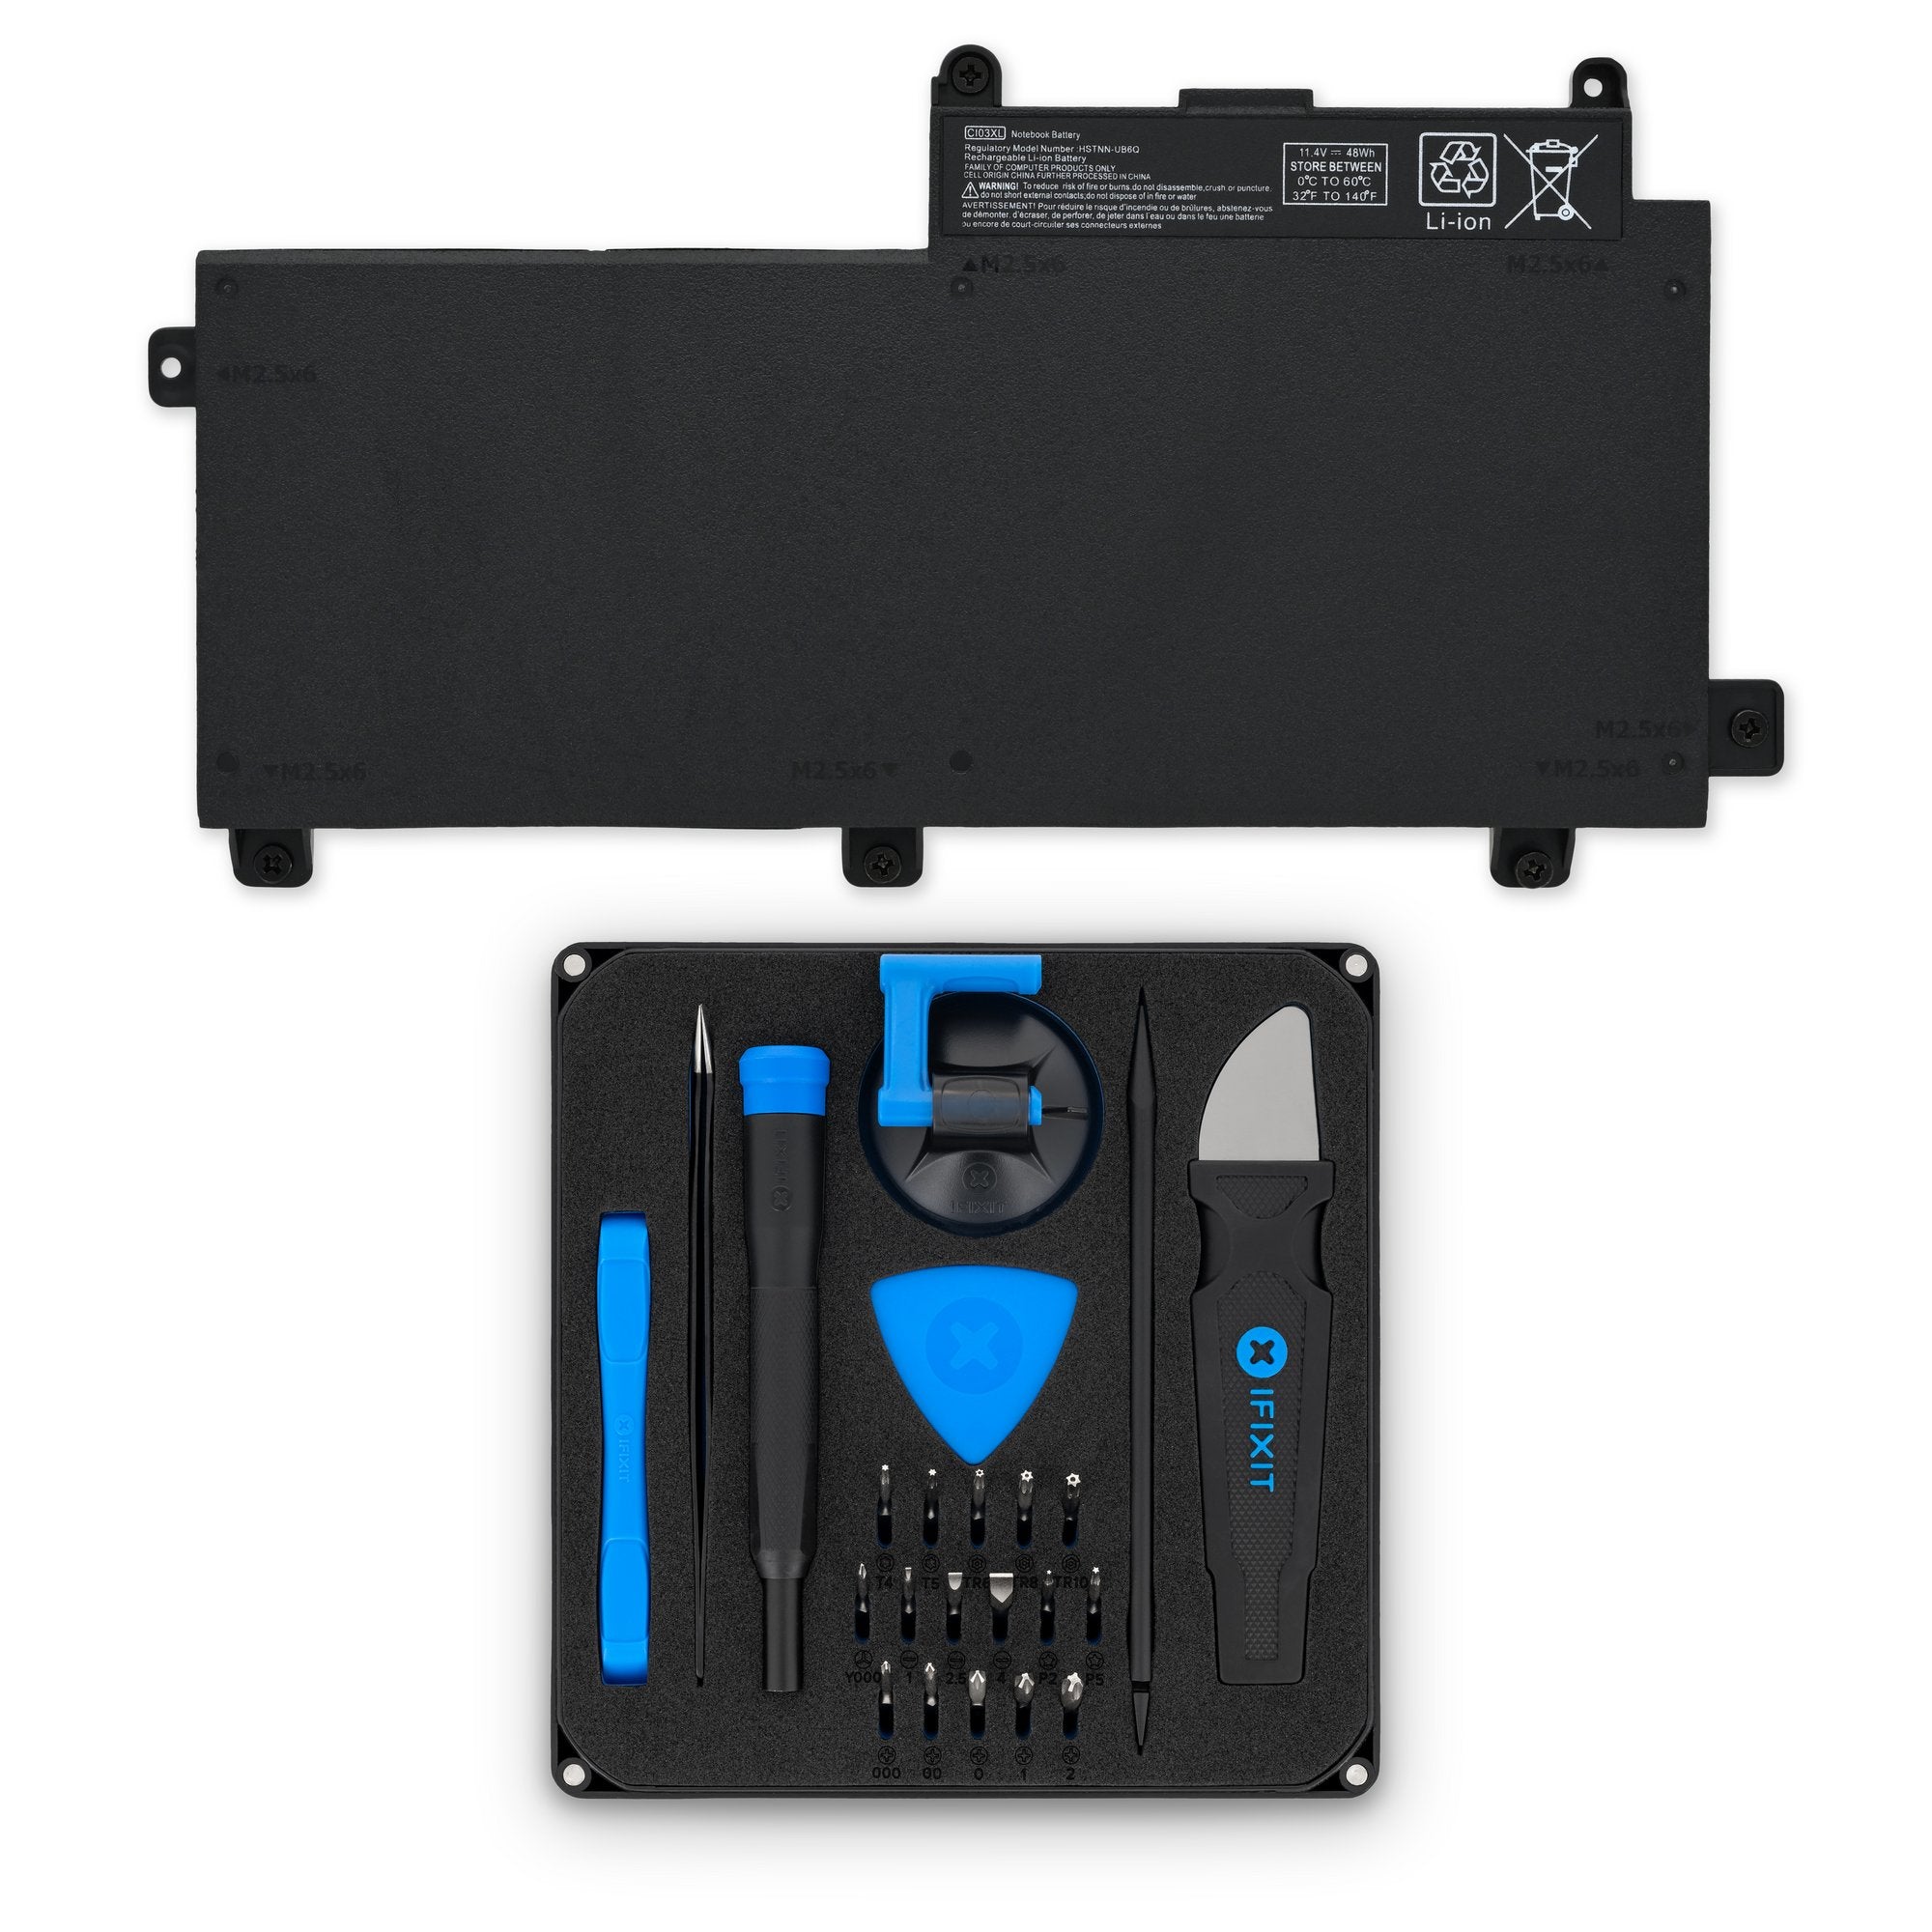 HP CIO3XL Battery New Fix Kit